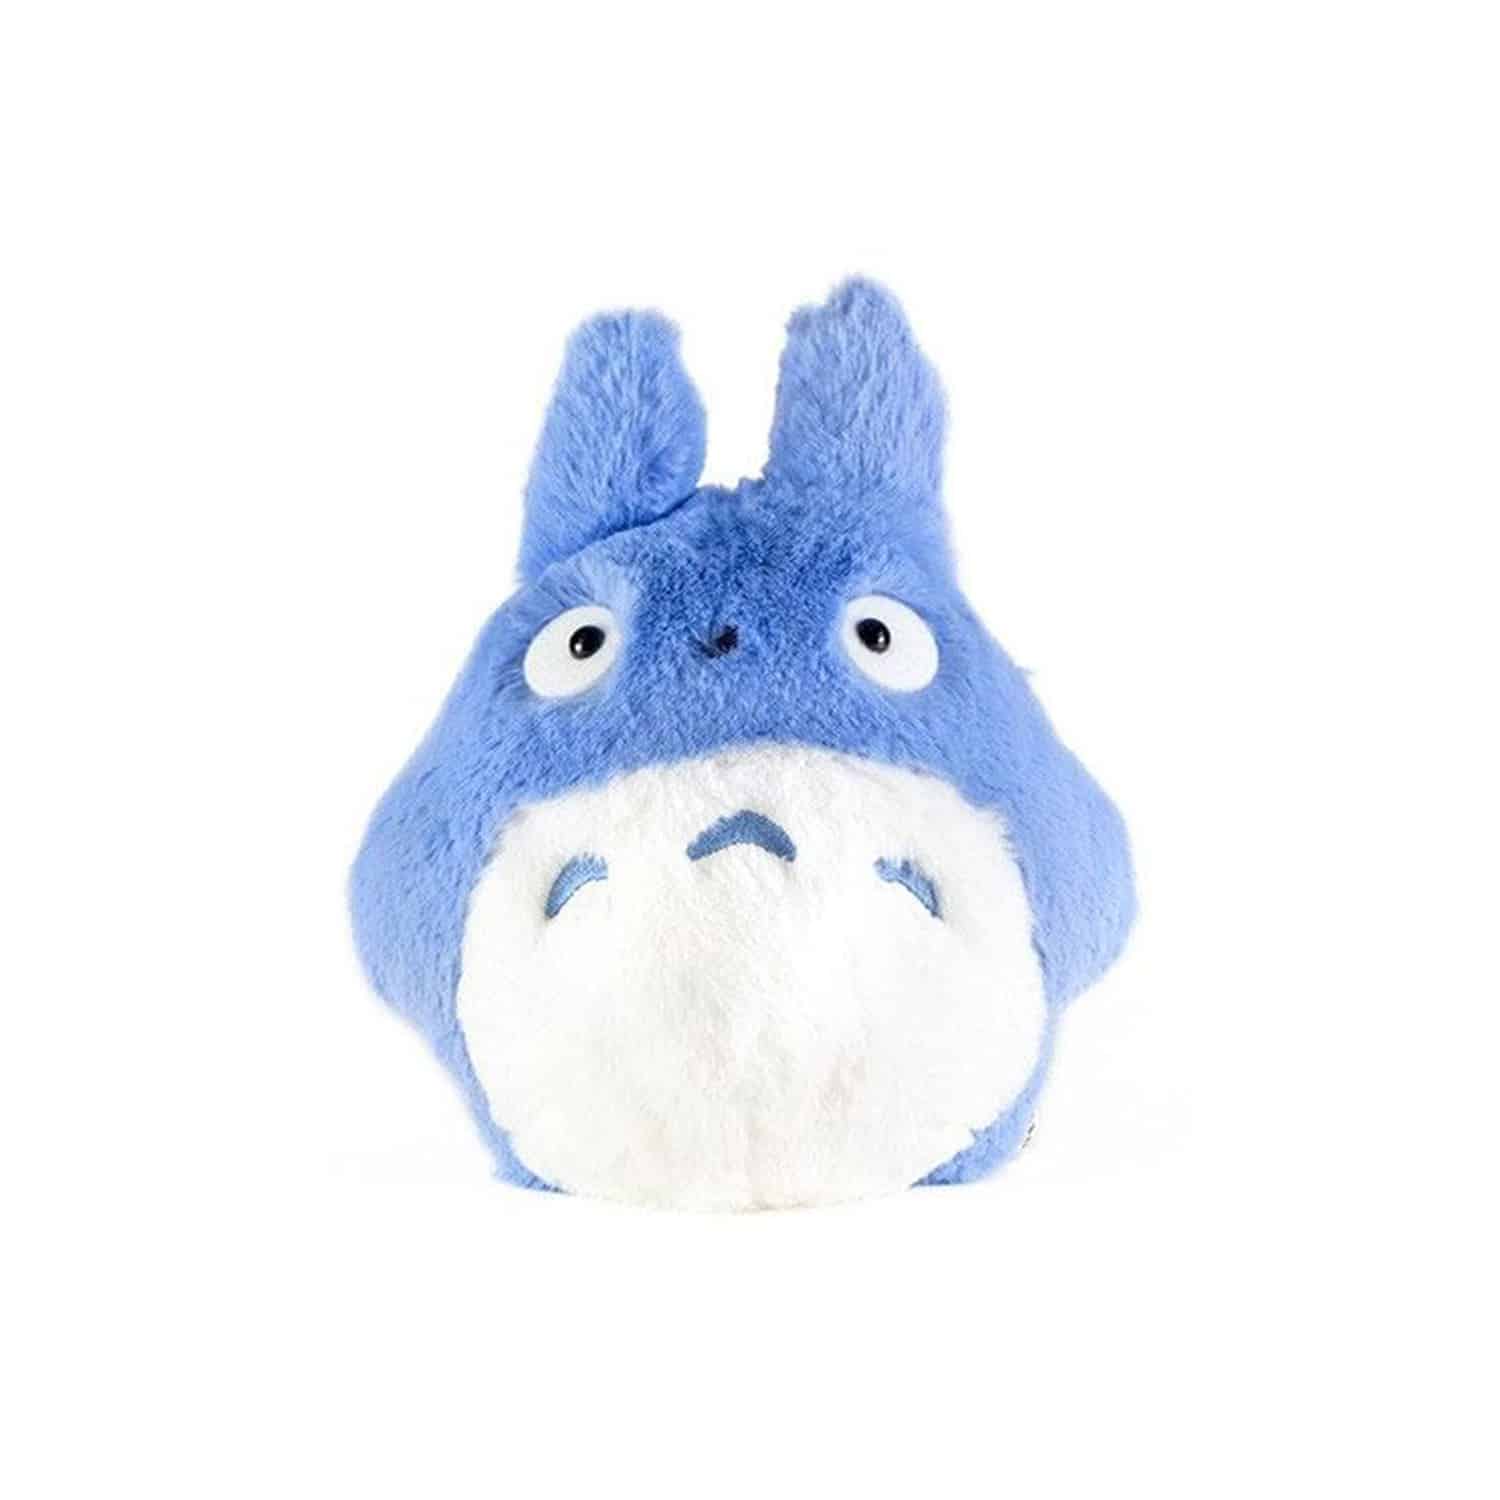 My Neighbor Totoro - Blue Totoro Nakayoshi Plush